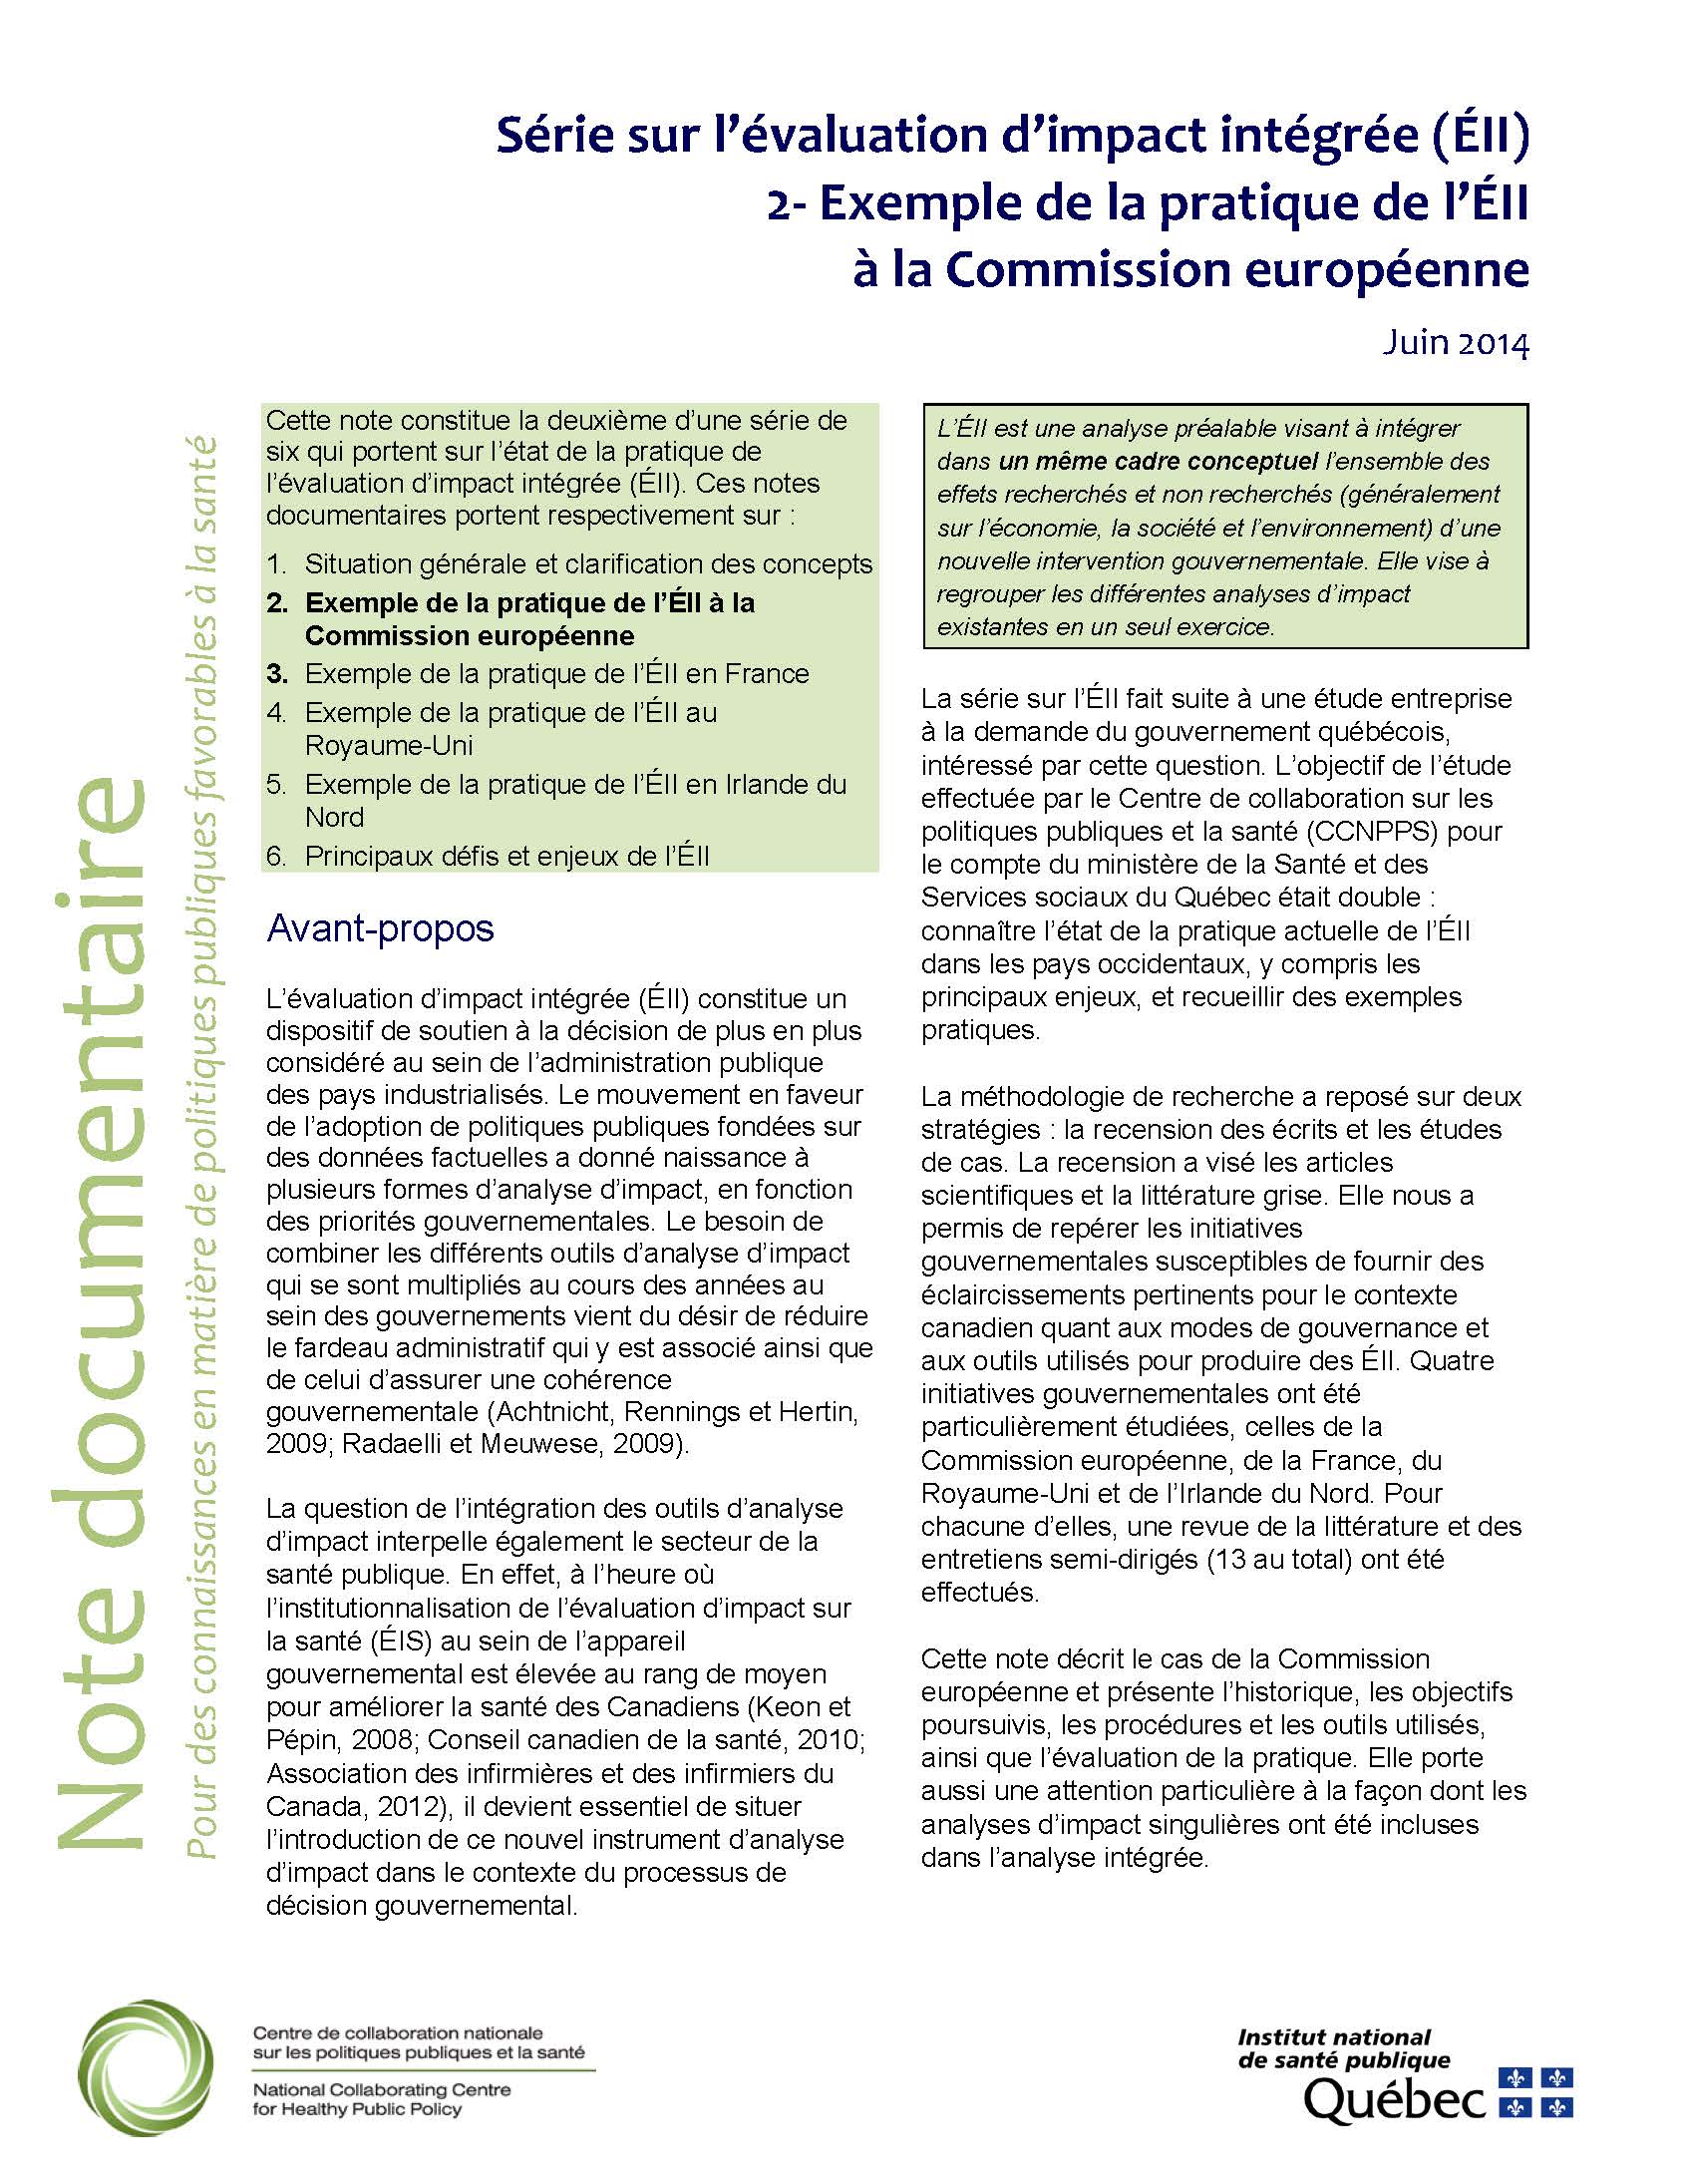 Série sur l’évaluation d’impact intégrée (ÉII). 2-Exemple de la pratique de l’ÉII à la Commission européenne